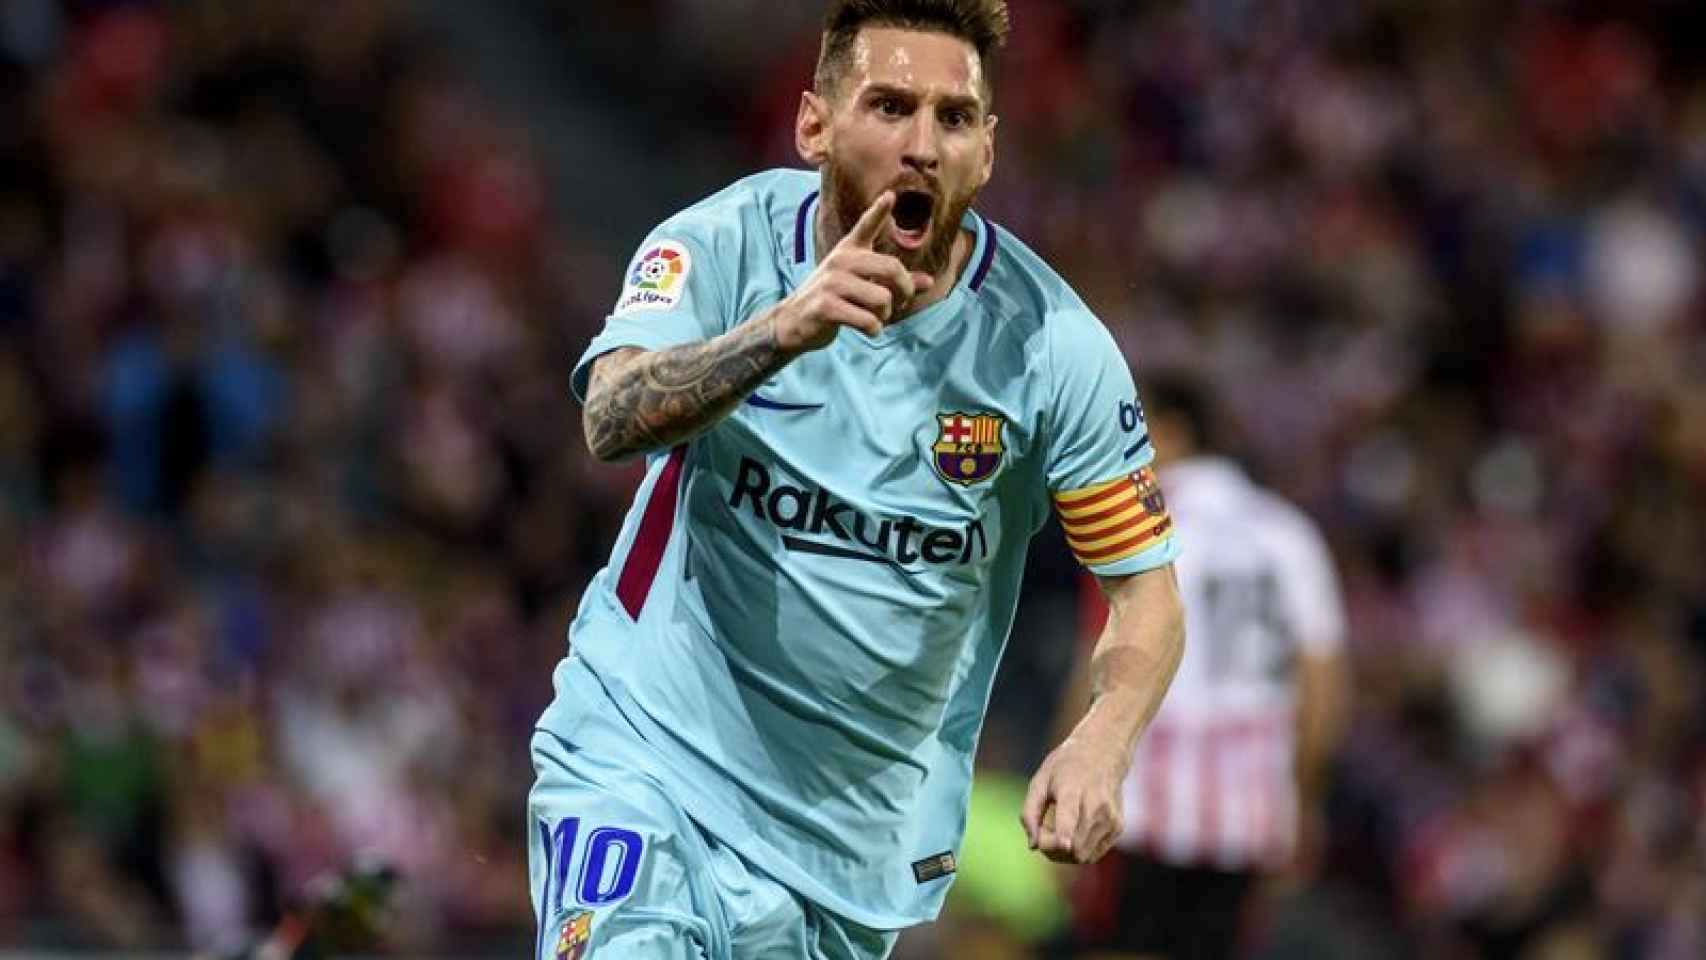 Messi celebra el primer gol ante el Athletic.